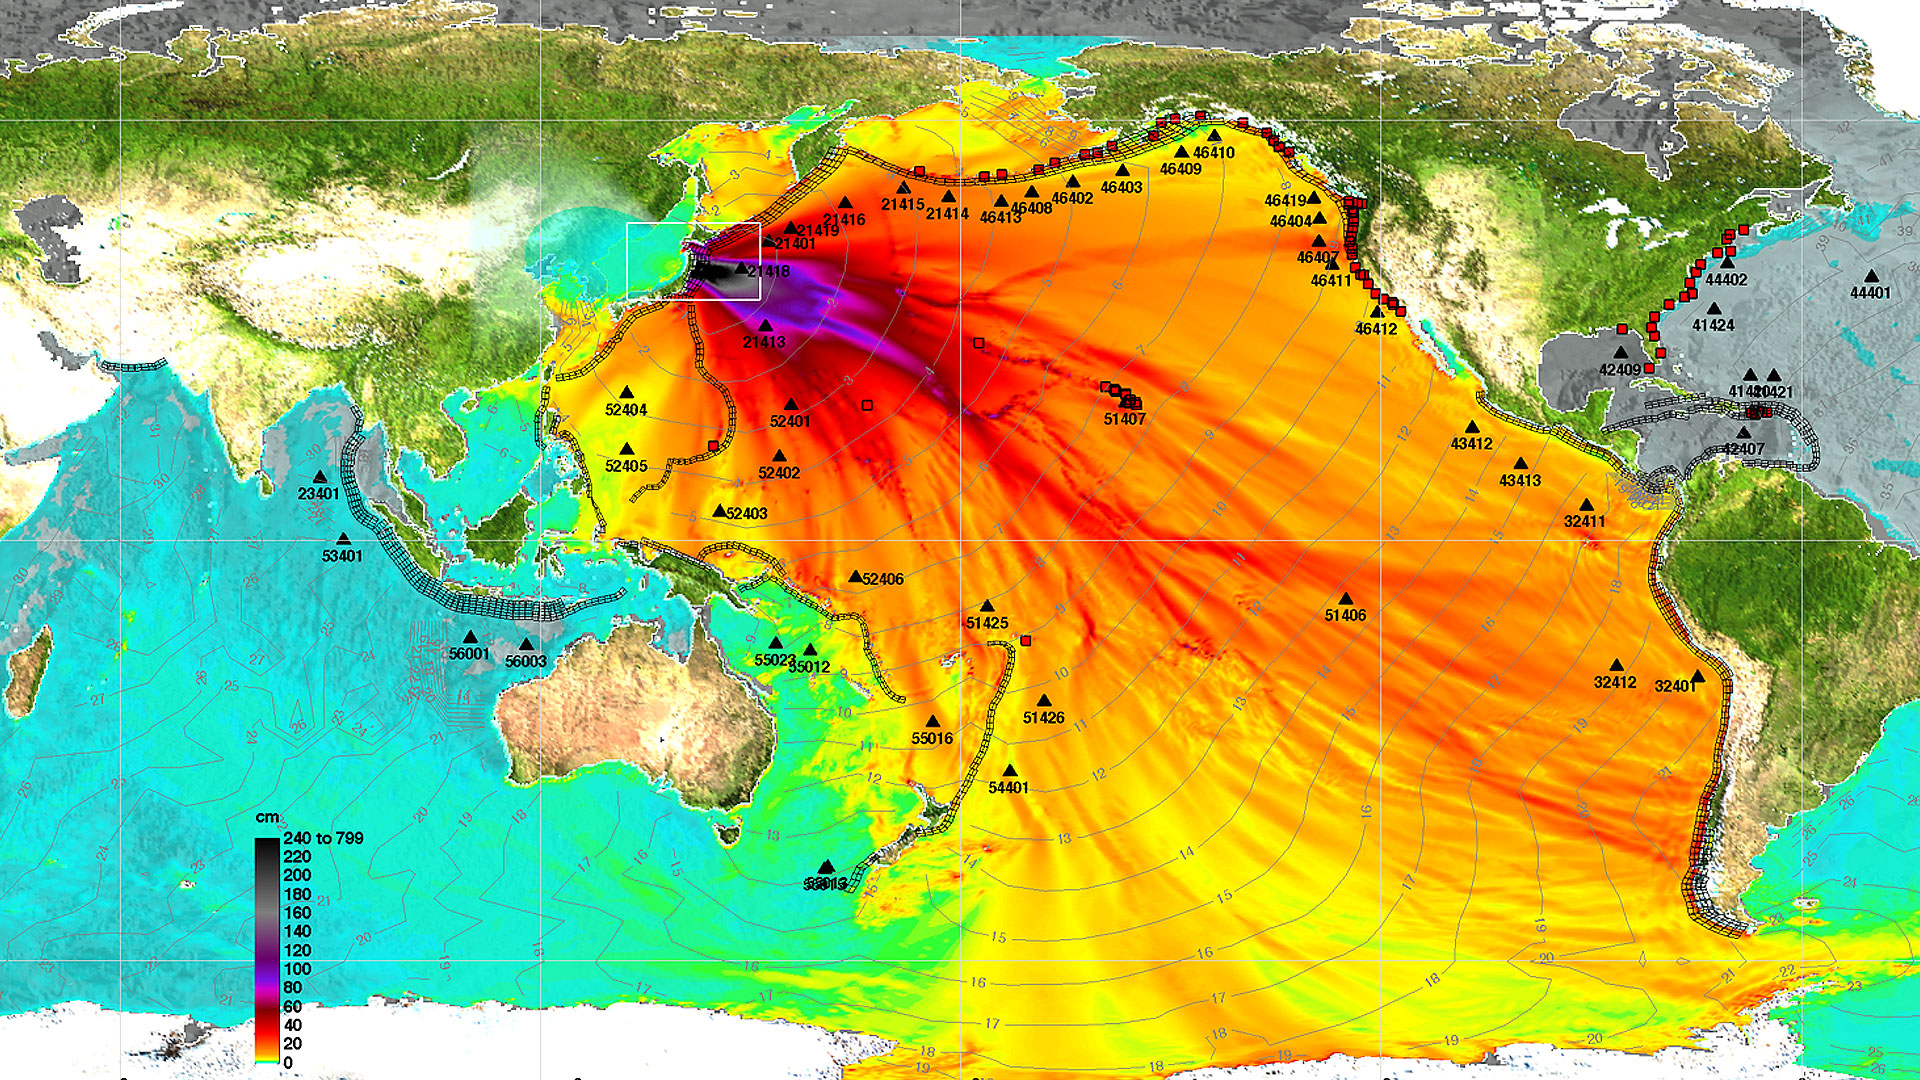 Aéroport de Sendai. Le séisme d'une magnitude de 9 qui s'est produit le 11 mars 2011 a provoqué un tsunami de 10 mètres de hauteur, qui s'est abattu sur les côtes au niveau de l'aéroport de la ville, en emportant tout ou presque sur son passage. © Google, Digital Globe, Geo Eye